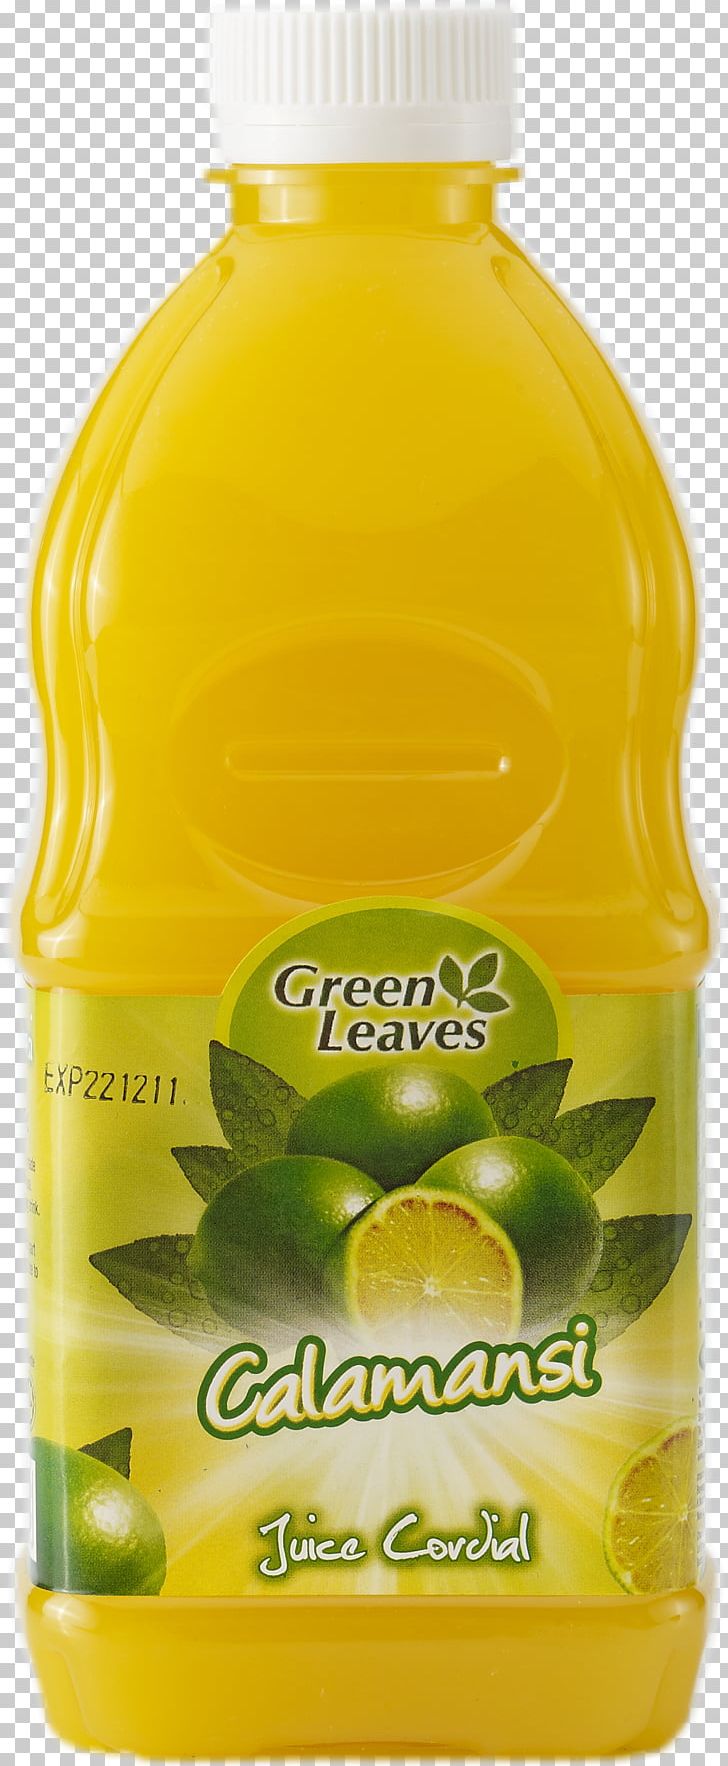 Lemon-lime Drink Squash Juice Orange Drink PNG, Clipart,  Free PNG Download